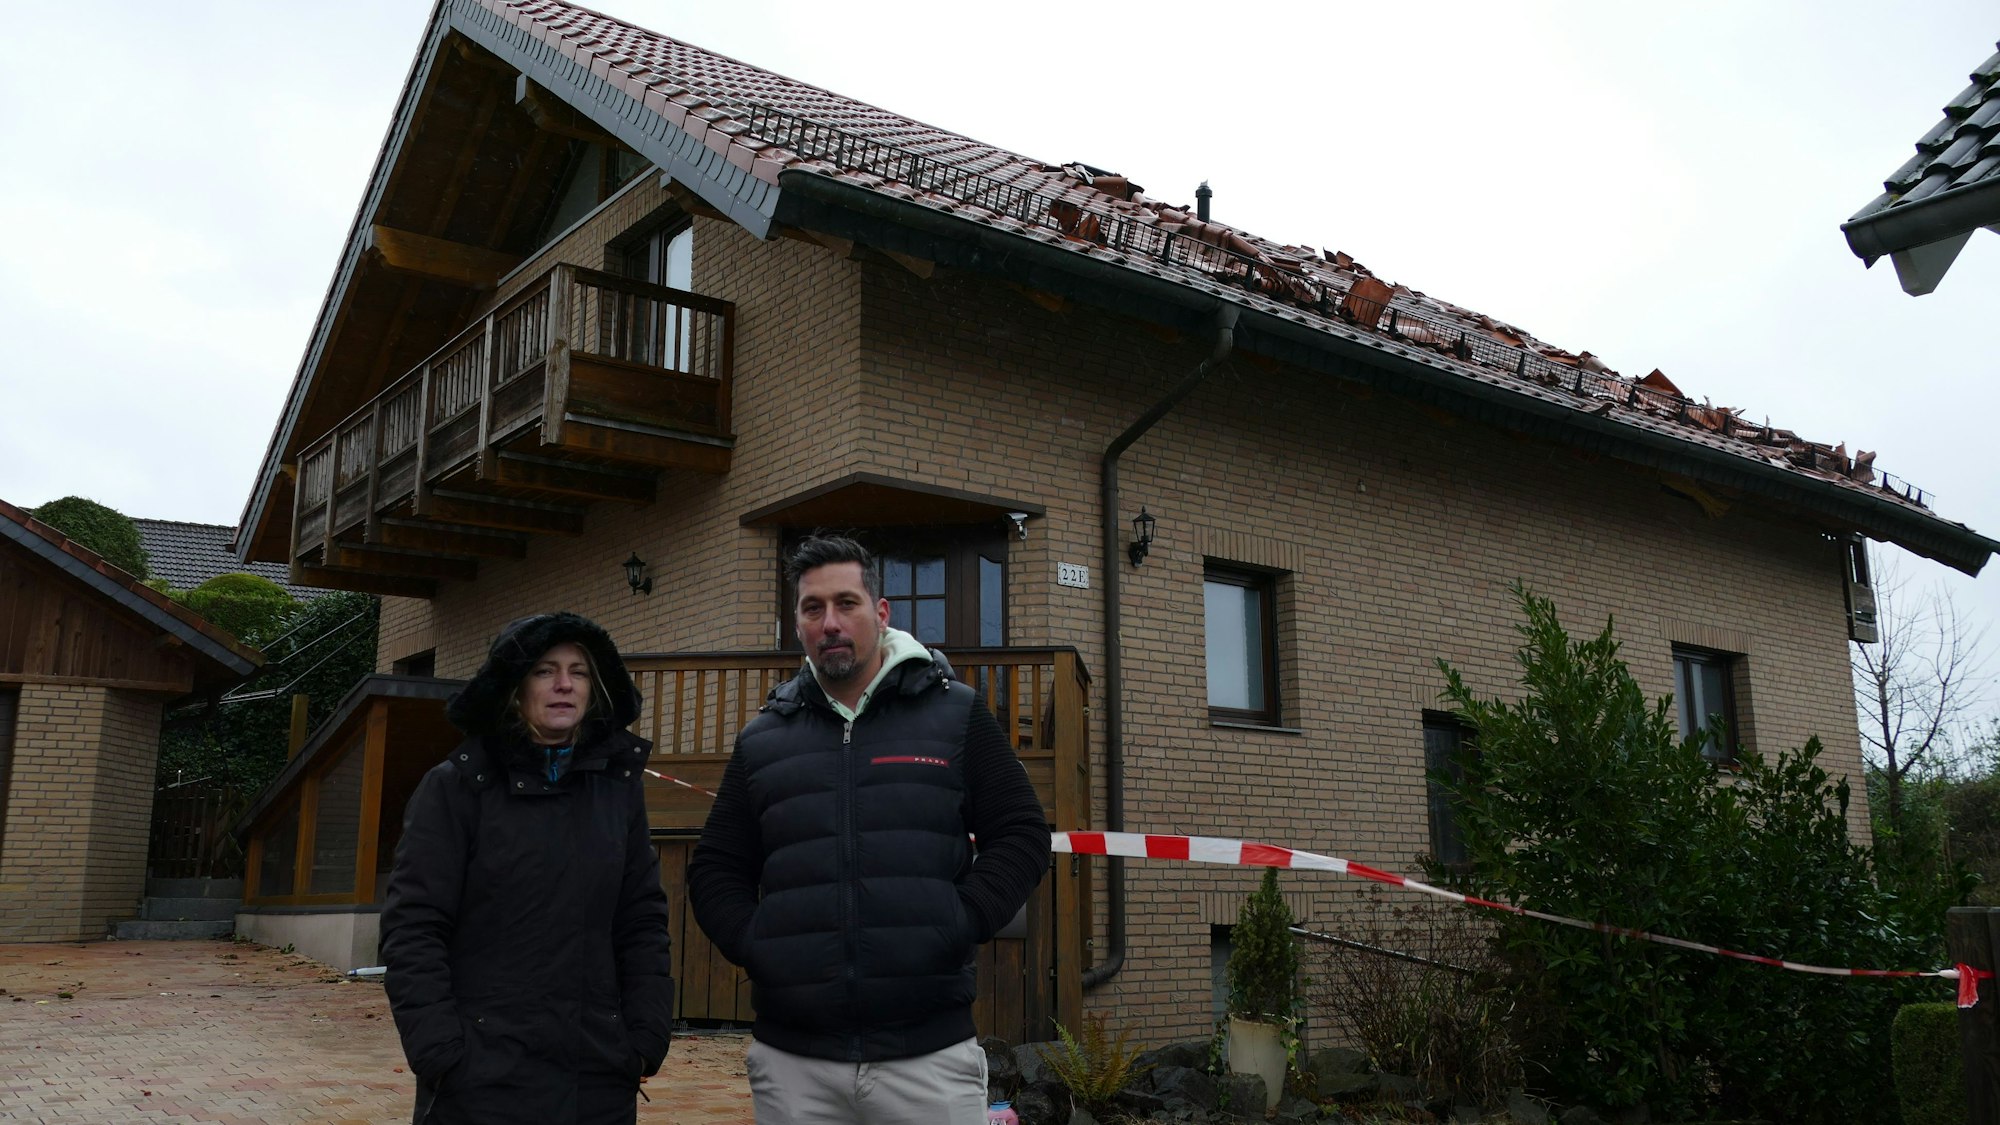 Christine und Florian Staubach vor ihrem Haus in der Dorfstraße in Lohmar-Krahwinkel, dessen Dach komplett zerstört ist. Hinein dürfen sie nicht mehr.